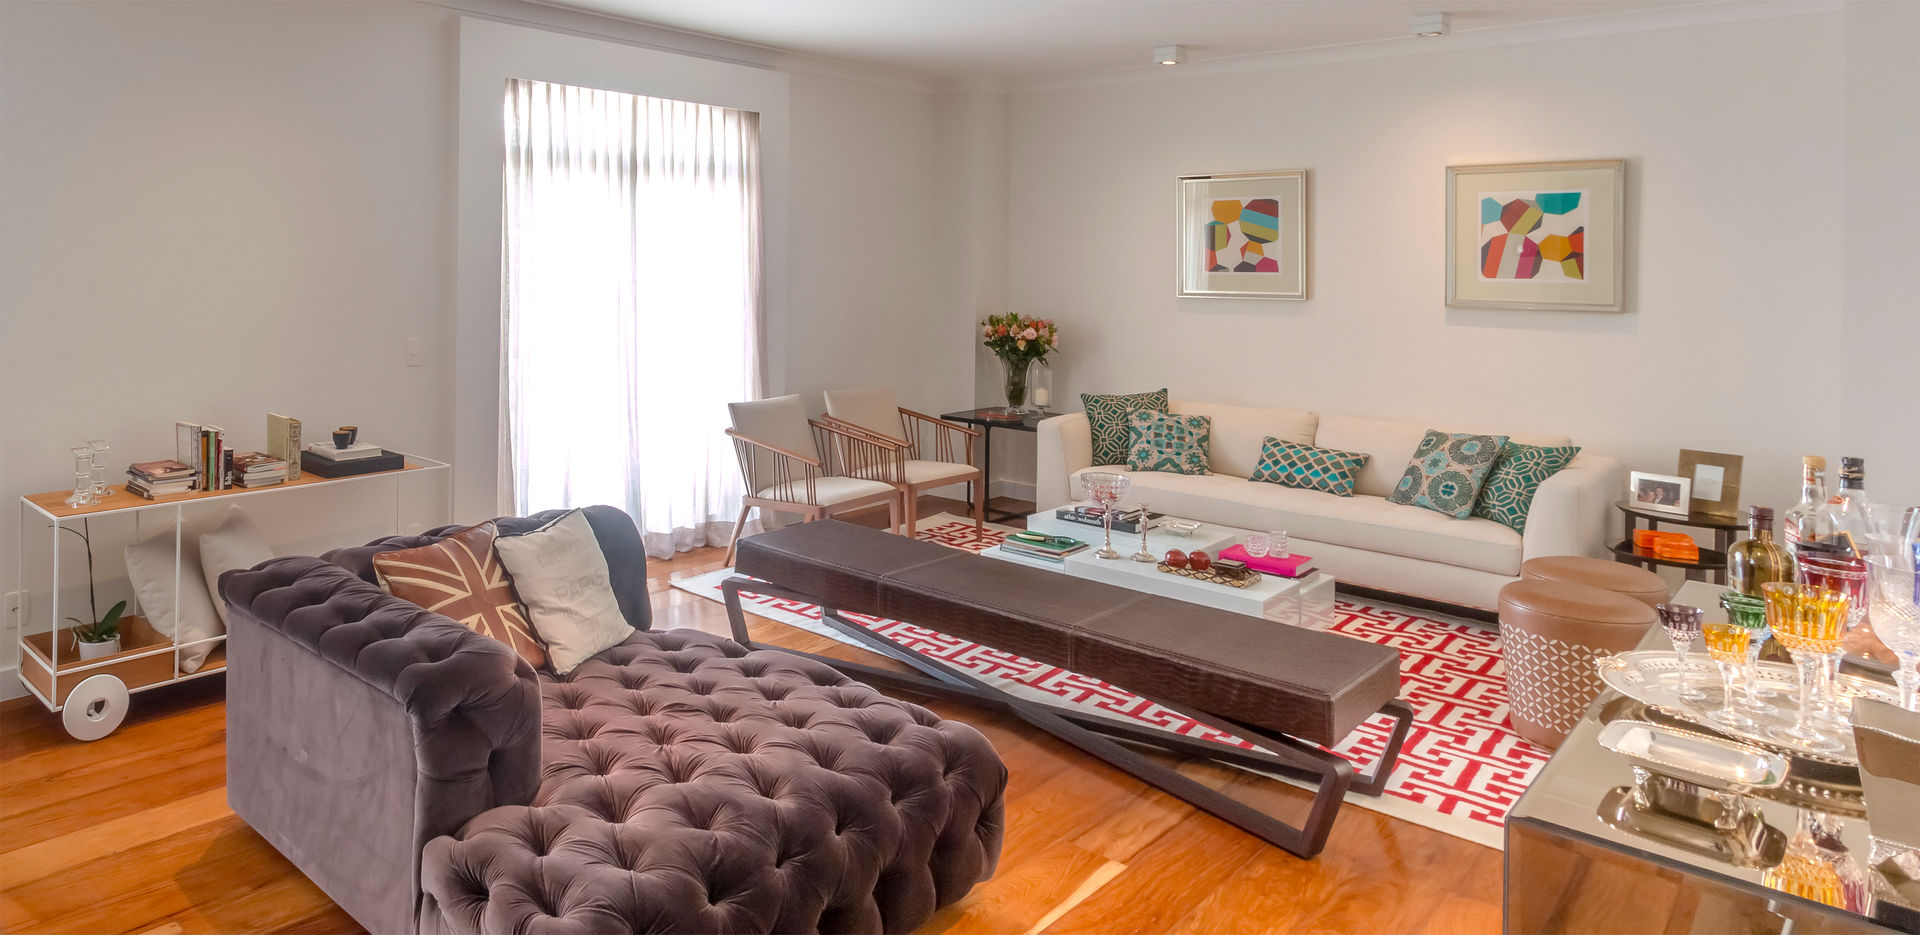 Sala de Estar contemporanea com chaise capitonê roxa Lnormand Interiores Salas de estar modernas sala de estar,tapete,almofada,decoração,móveis,design,clean,minimalista